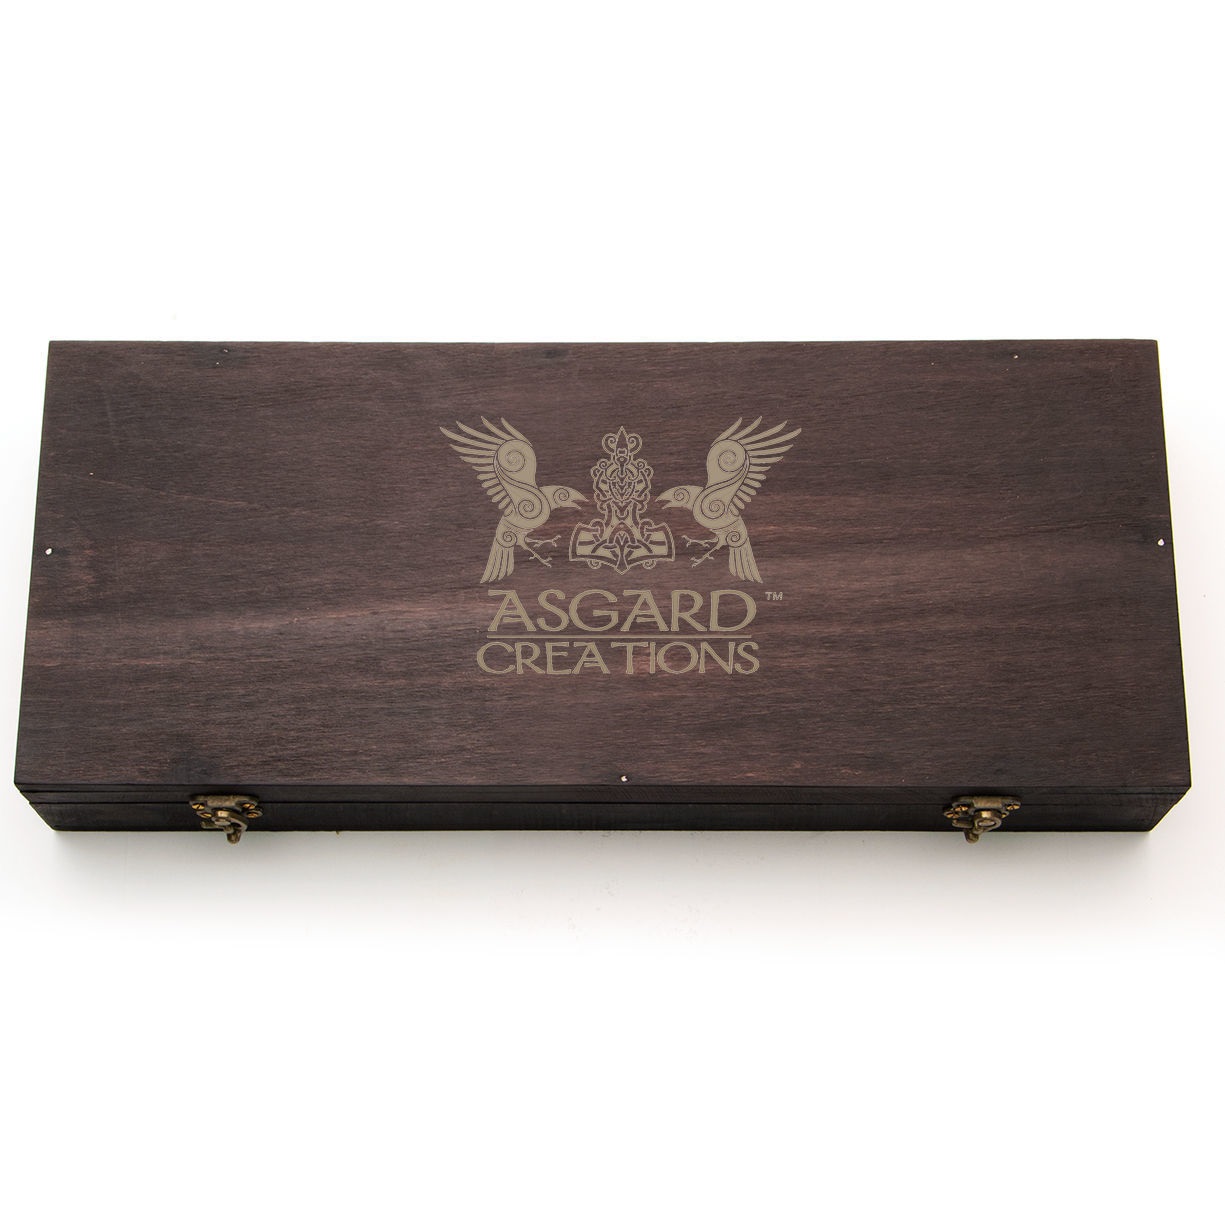 Asgard Creations Axt und Messer Box Set